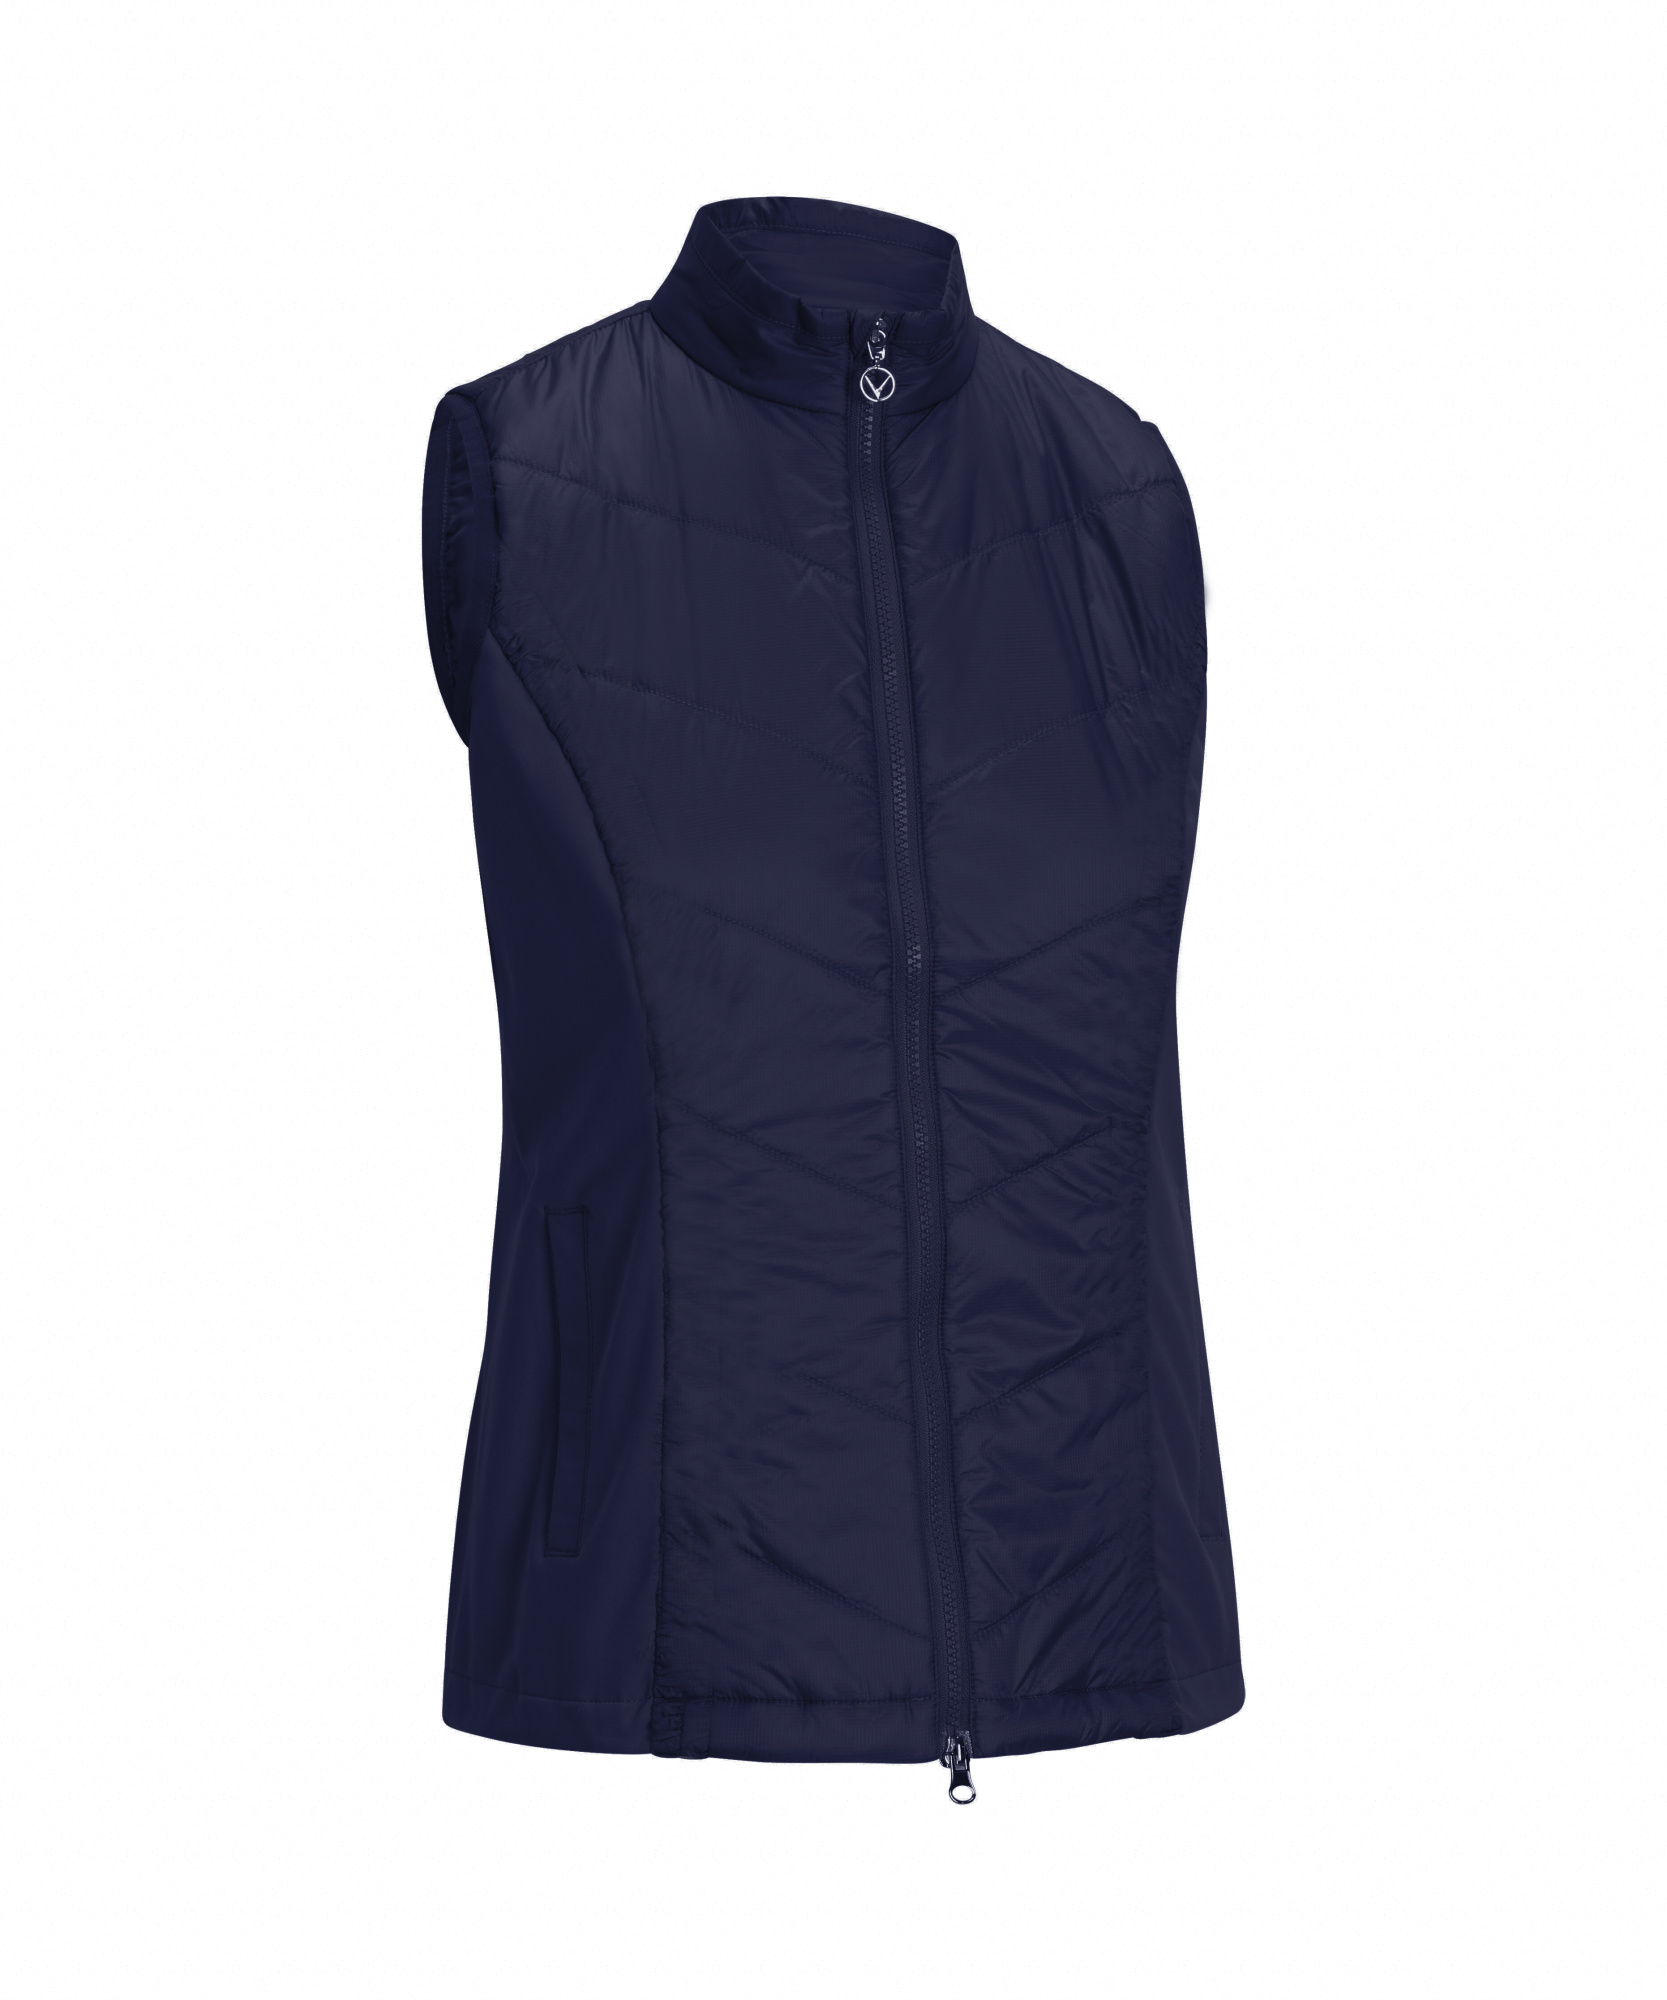 Levně Callaway Primaloft Quilted dámská golfová vesta, tmavě modrá